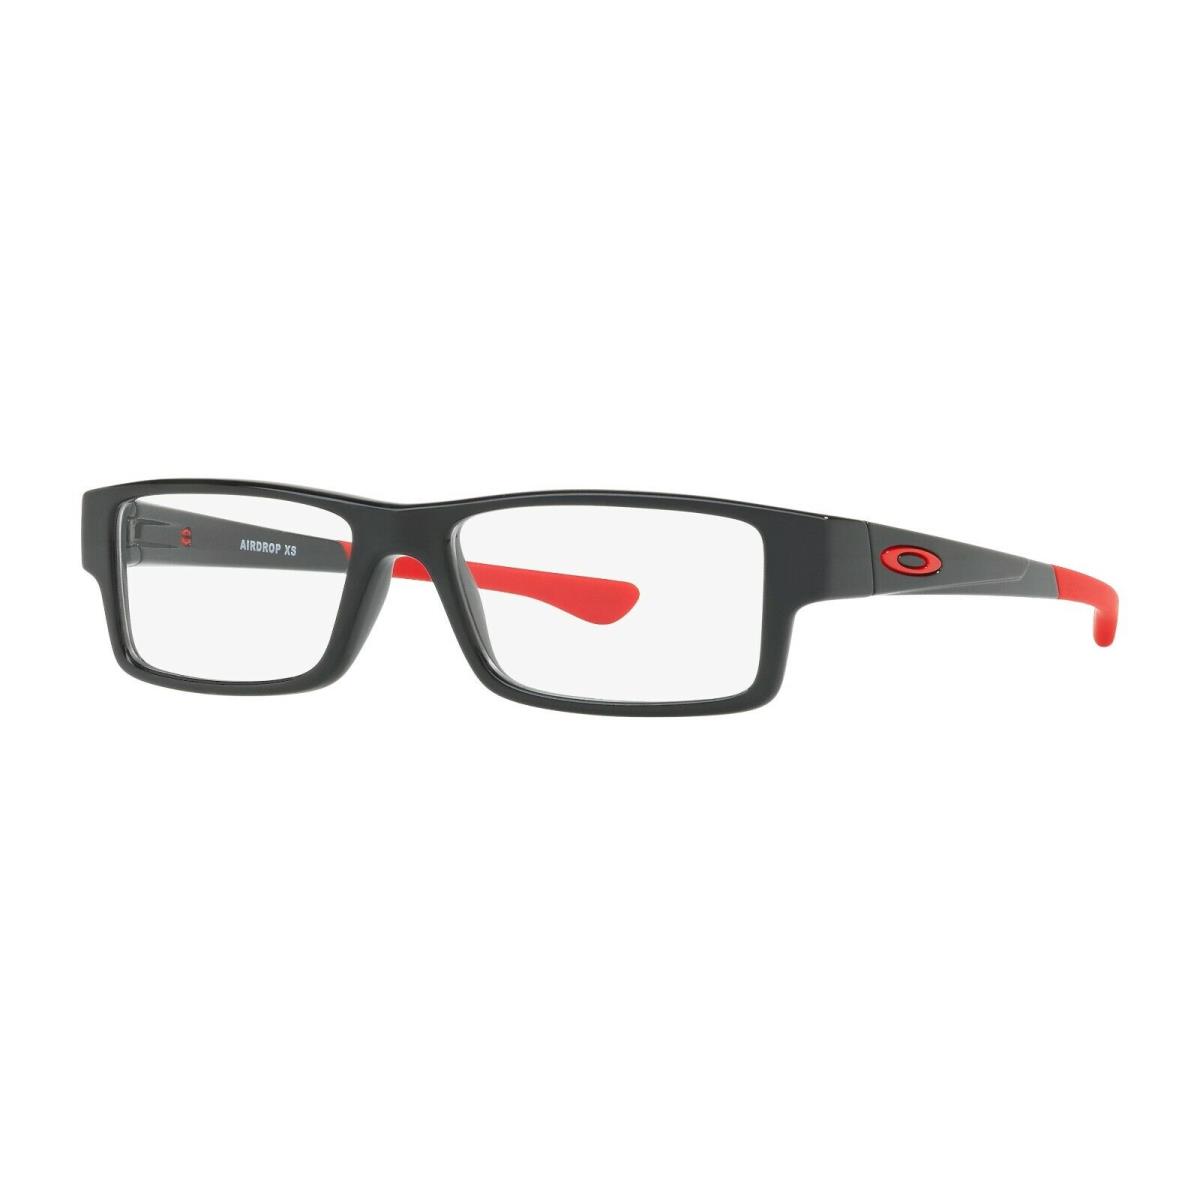 Oakley Airdrop OX 8003 Polished Black 800304 Eyeglasses 50MM - Polished Black Frame